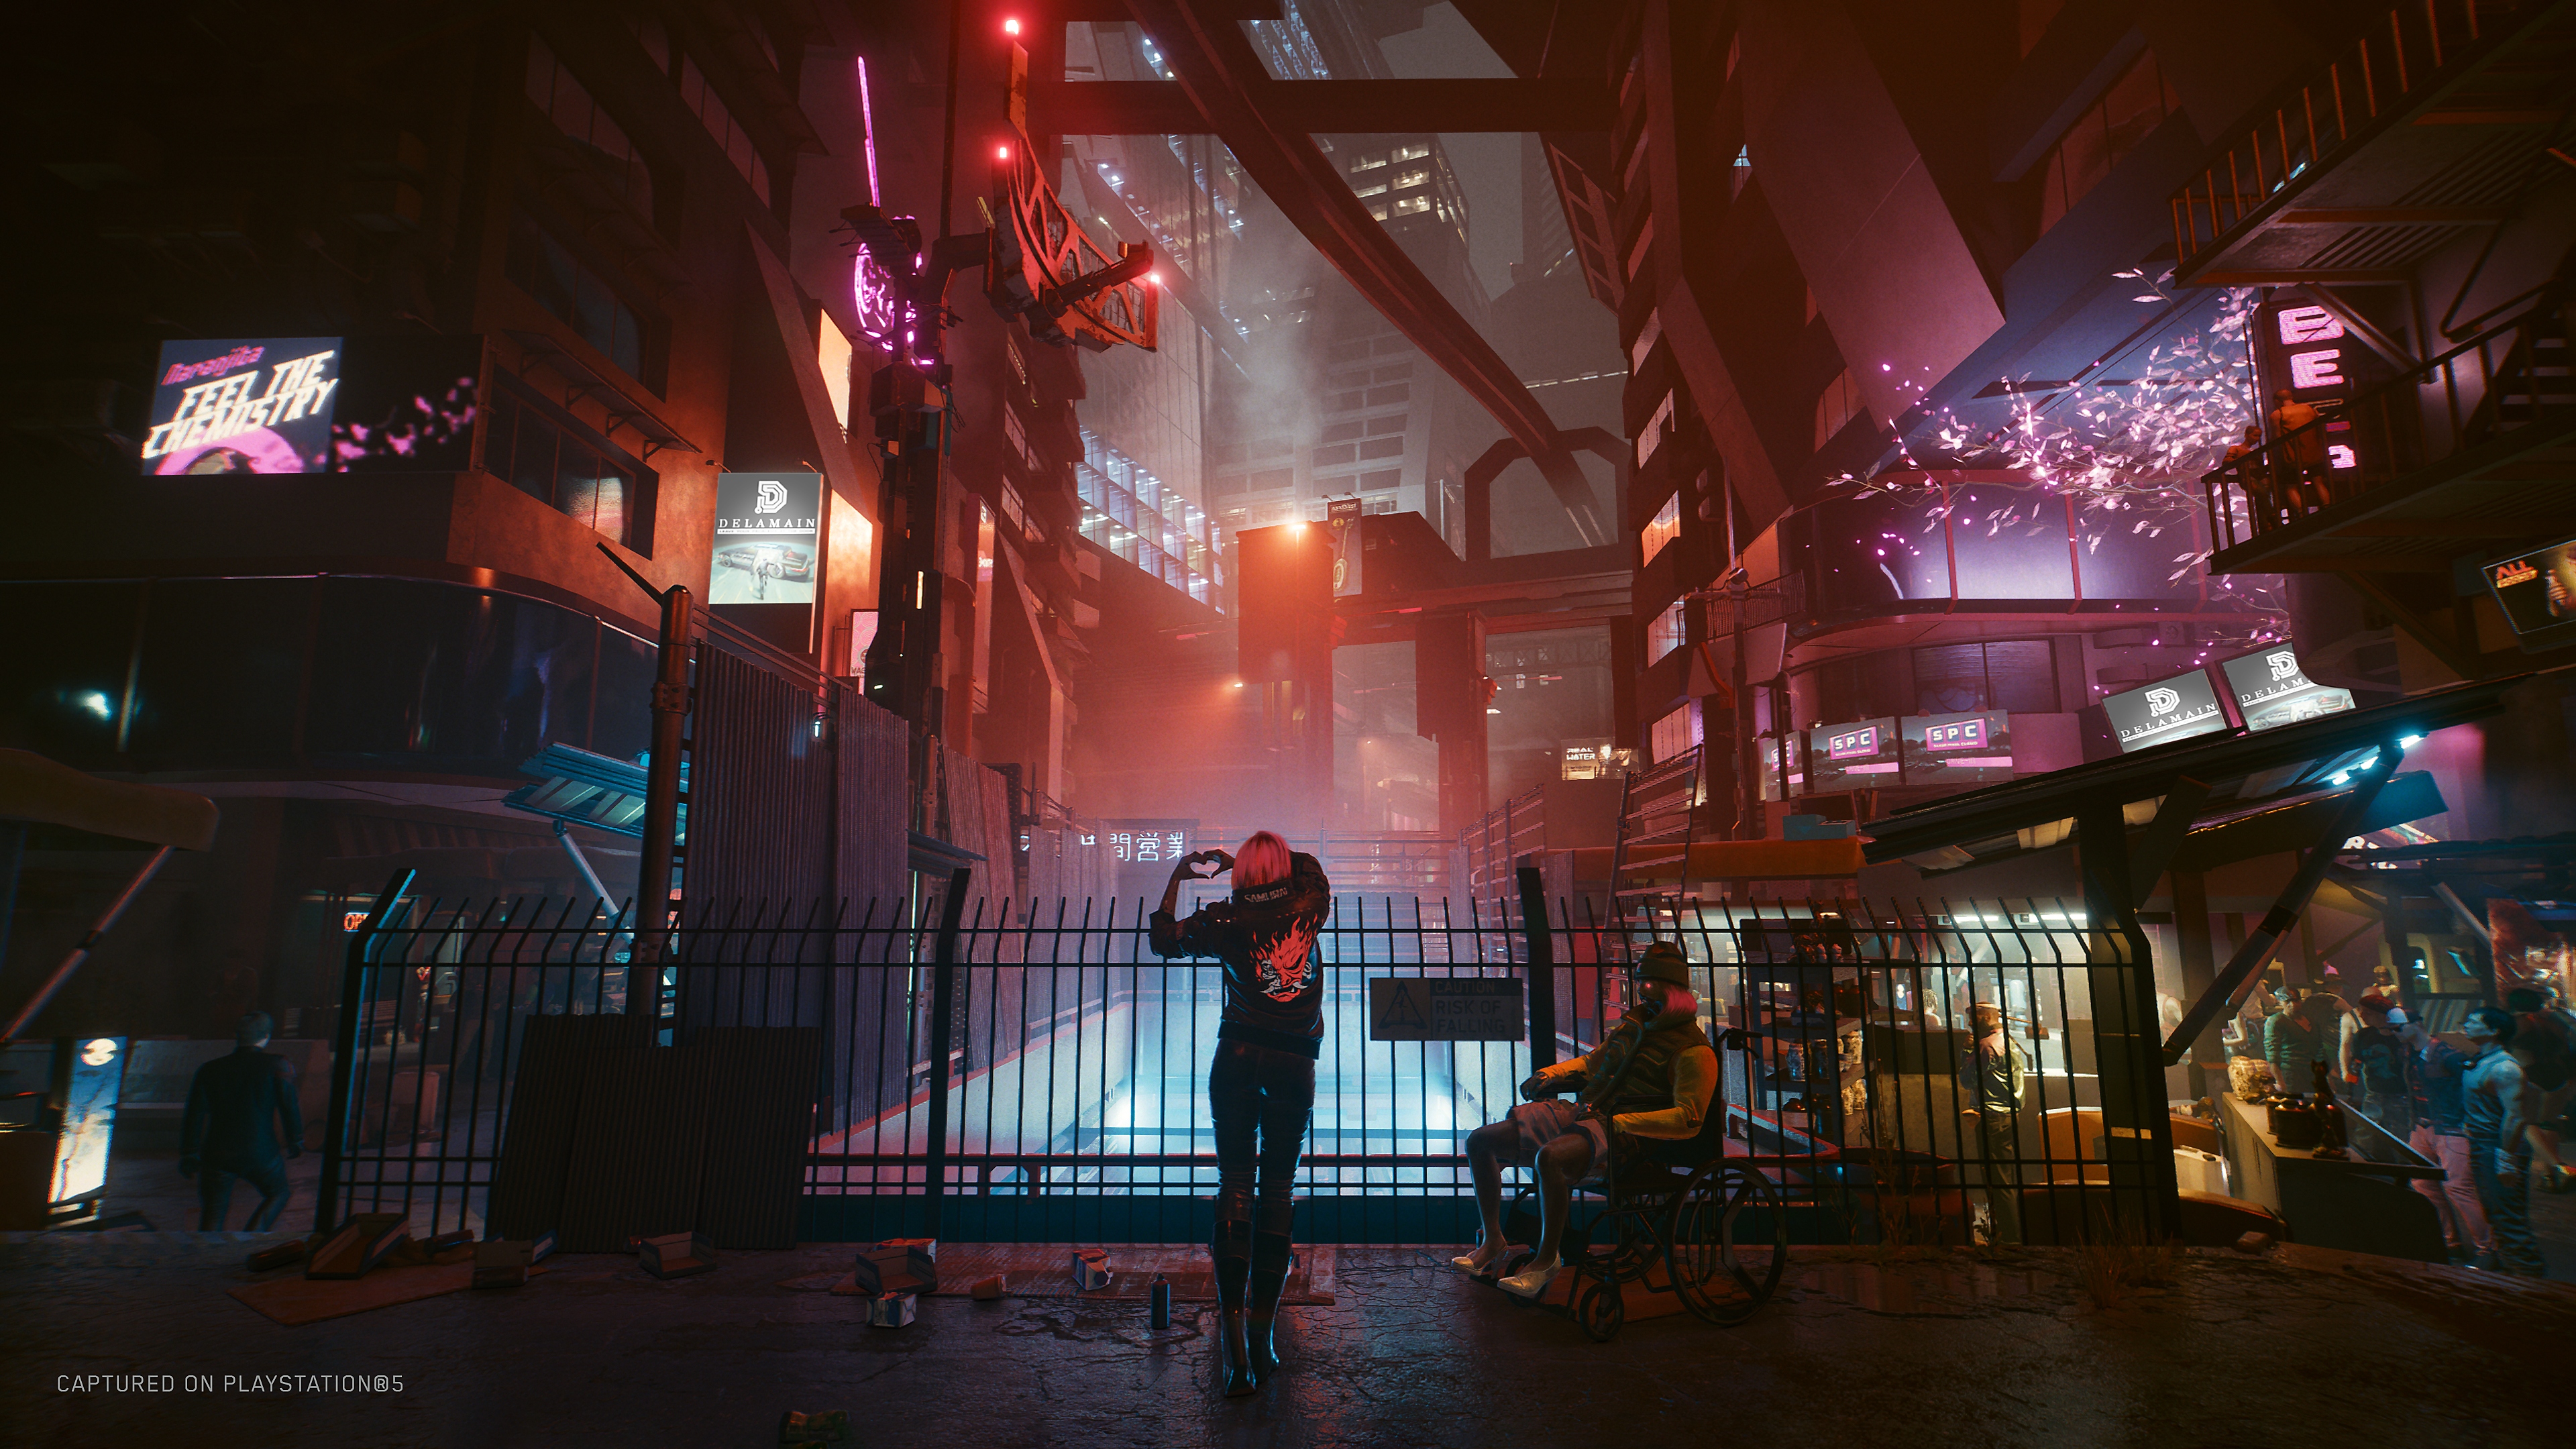 Cyberpunk 2077 - Captura de tela da versão da nova geração - PS5